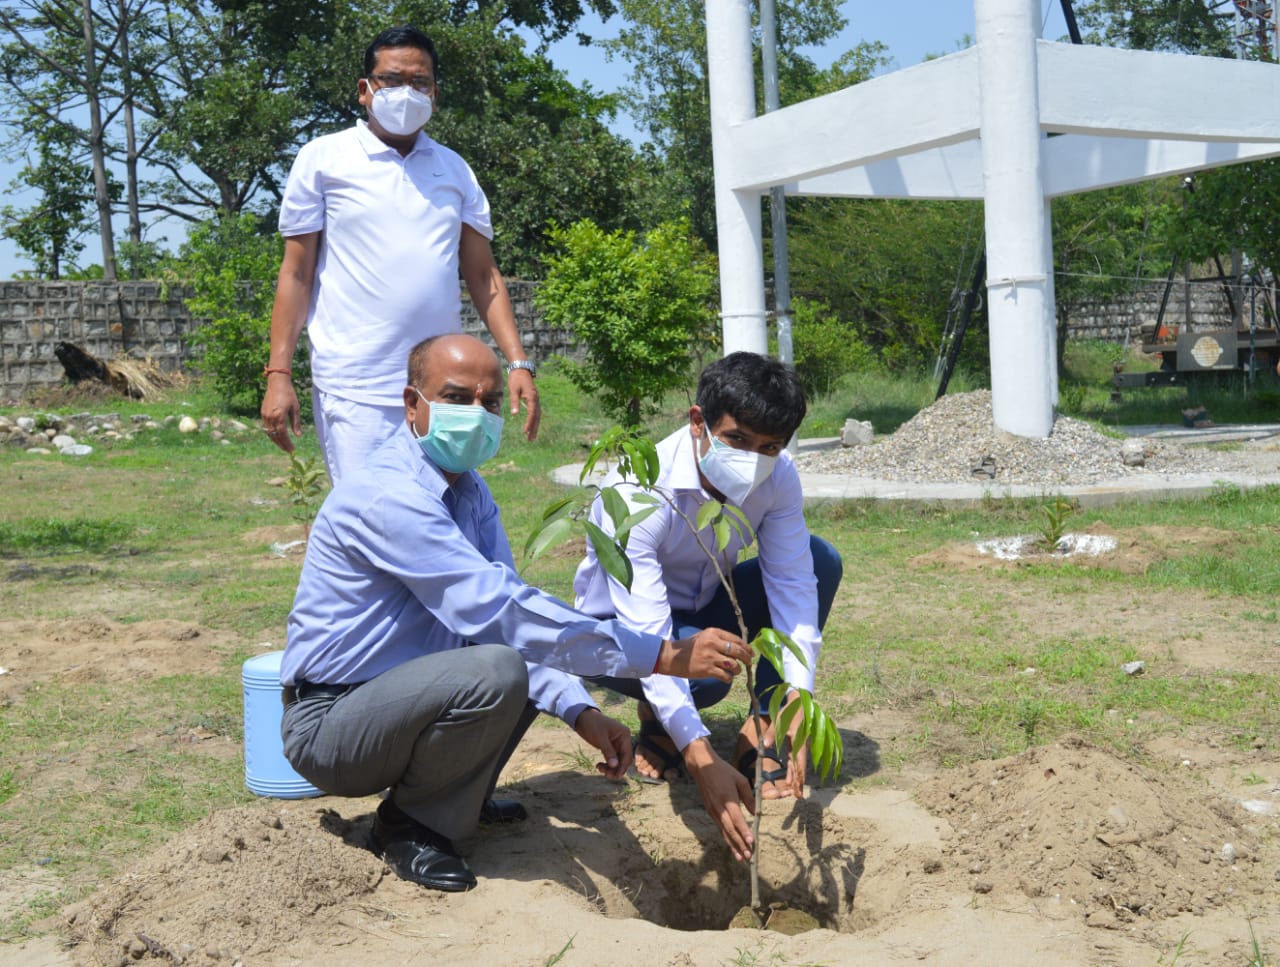 विश्व पर्यावरण दिवस : DIG अरुण मोहन जोशी समेत अधिकारियों-कर्मचारियों ने लगाए फलदार और छायादार पेड़, लोगों से की ये अपील